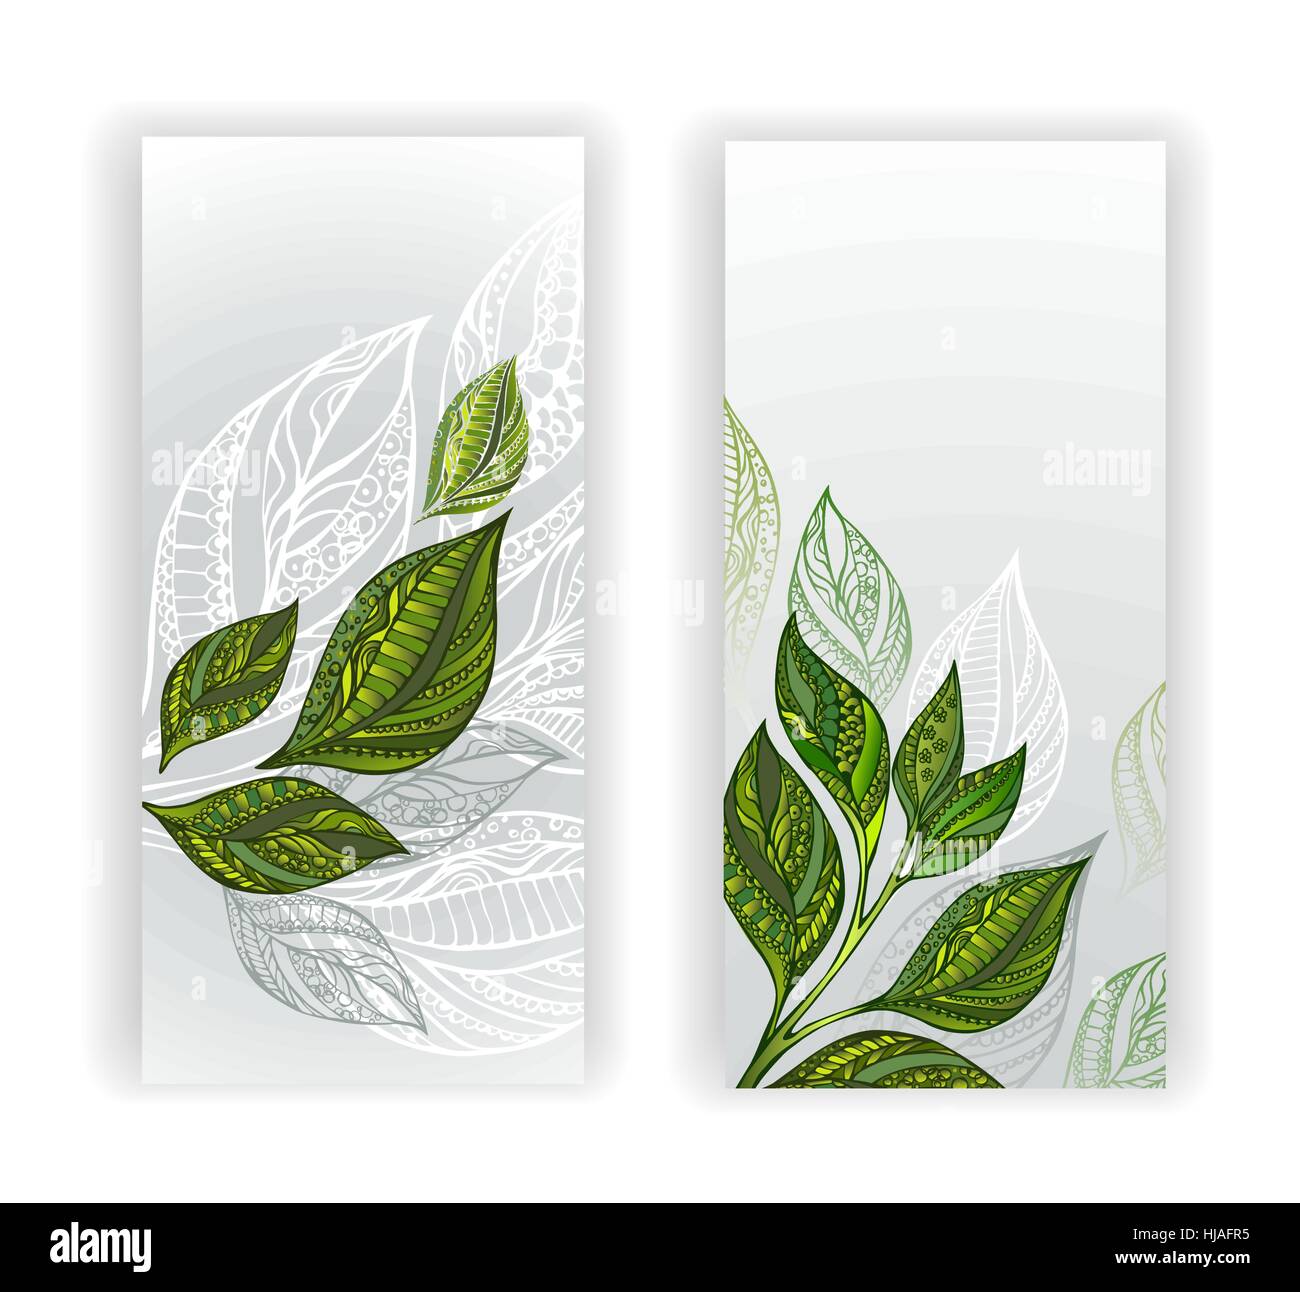 Zwei Banner mit gemusterten, grün, grau-weißer Tee Blätter und Sprossen. Tee-Design. Stock Vektor